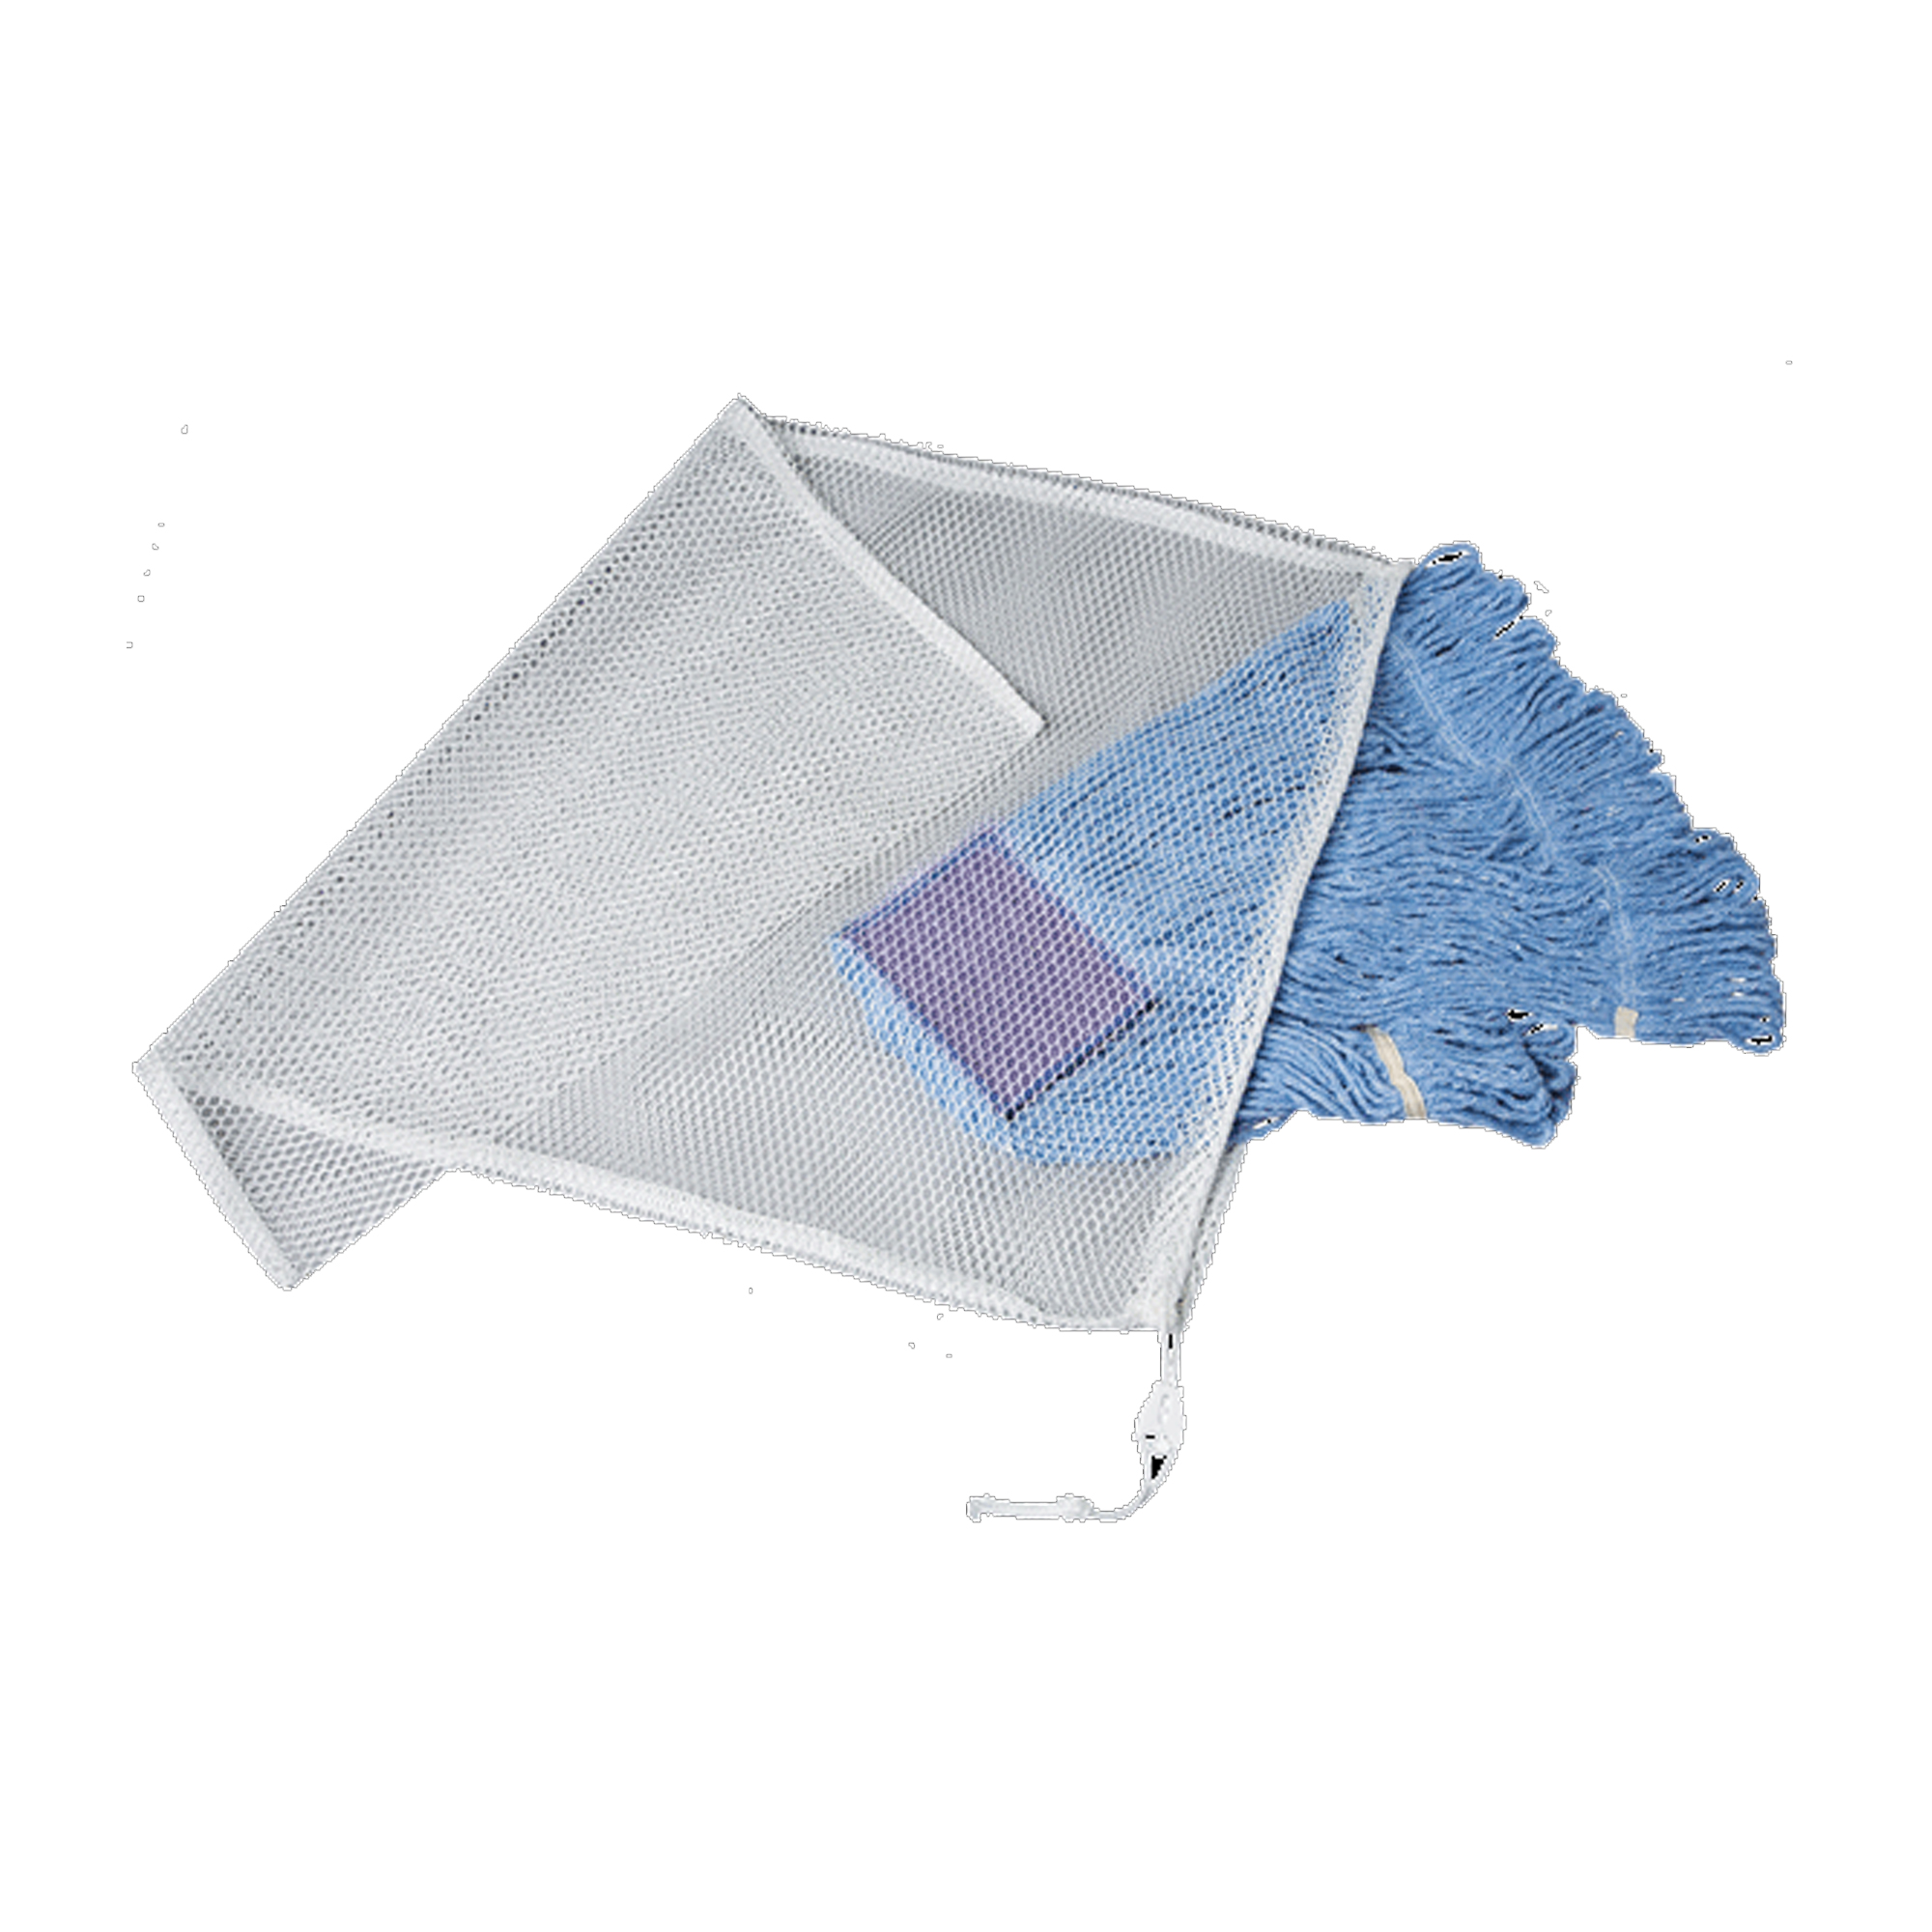 Laundry Bag - Wash Nets (White) - Case Of 5